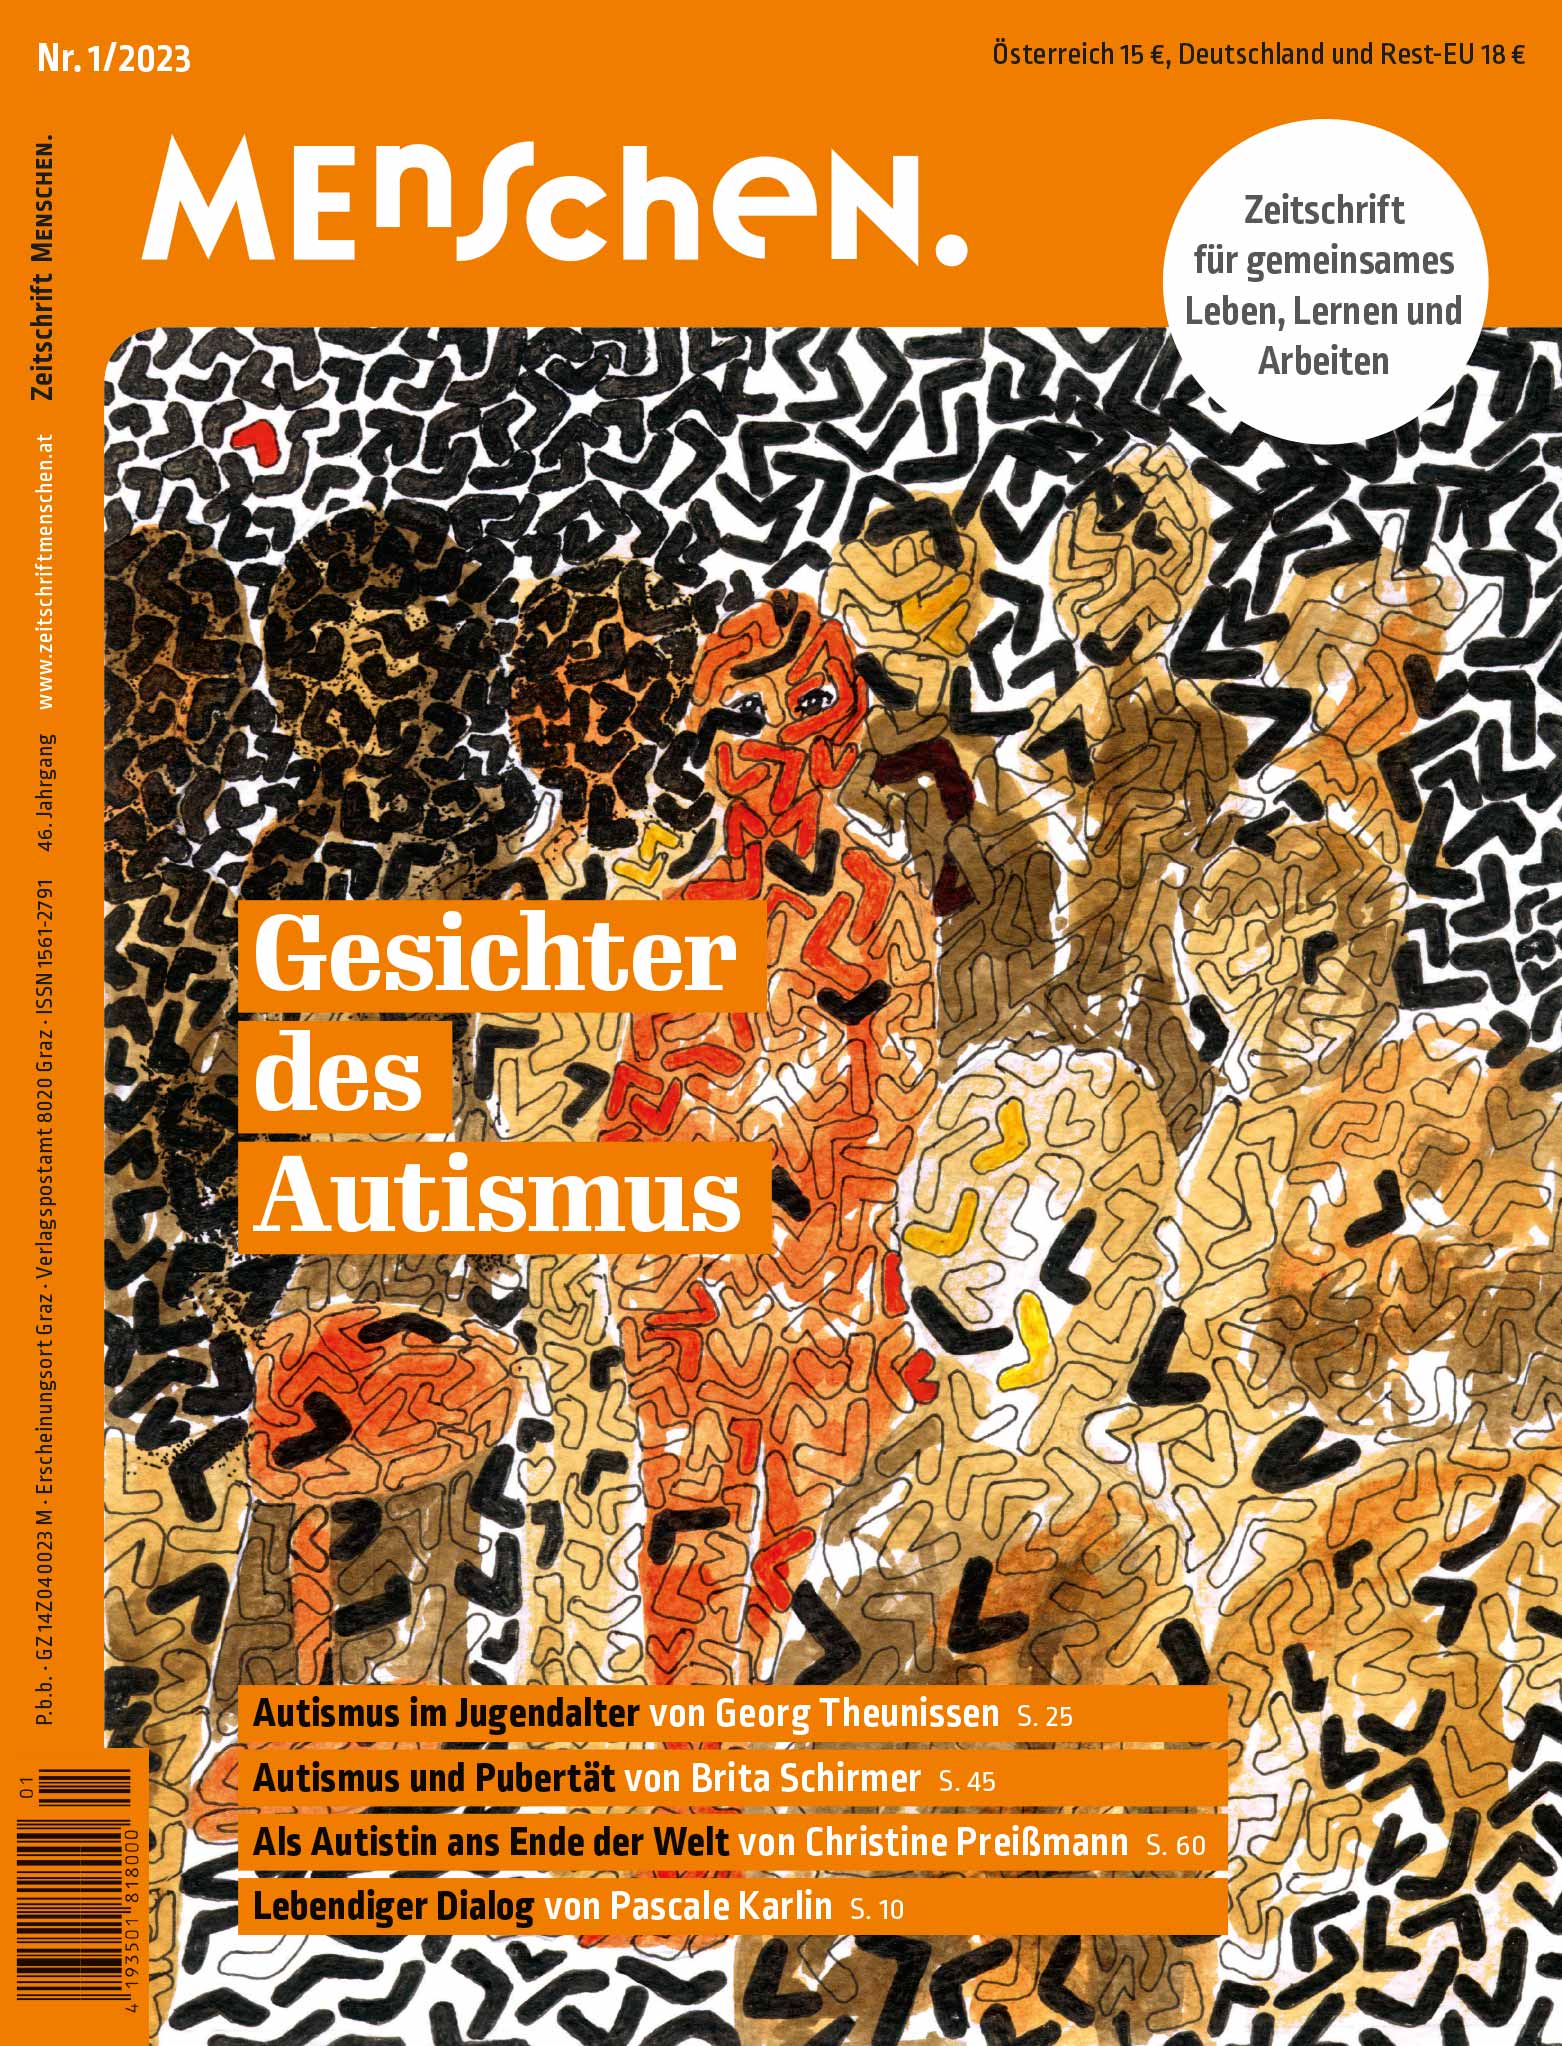 Titelbild Ausgabe 1/2023 "Gesichter des Autismus"